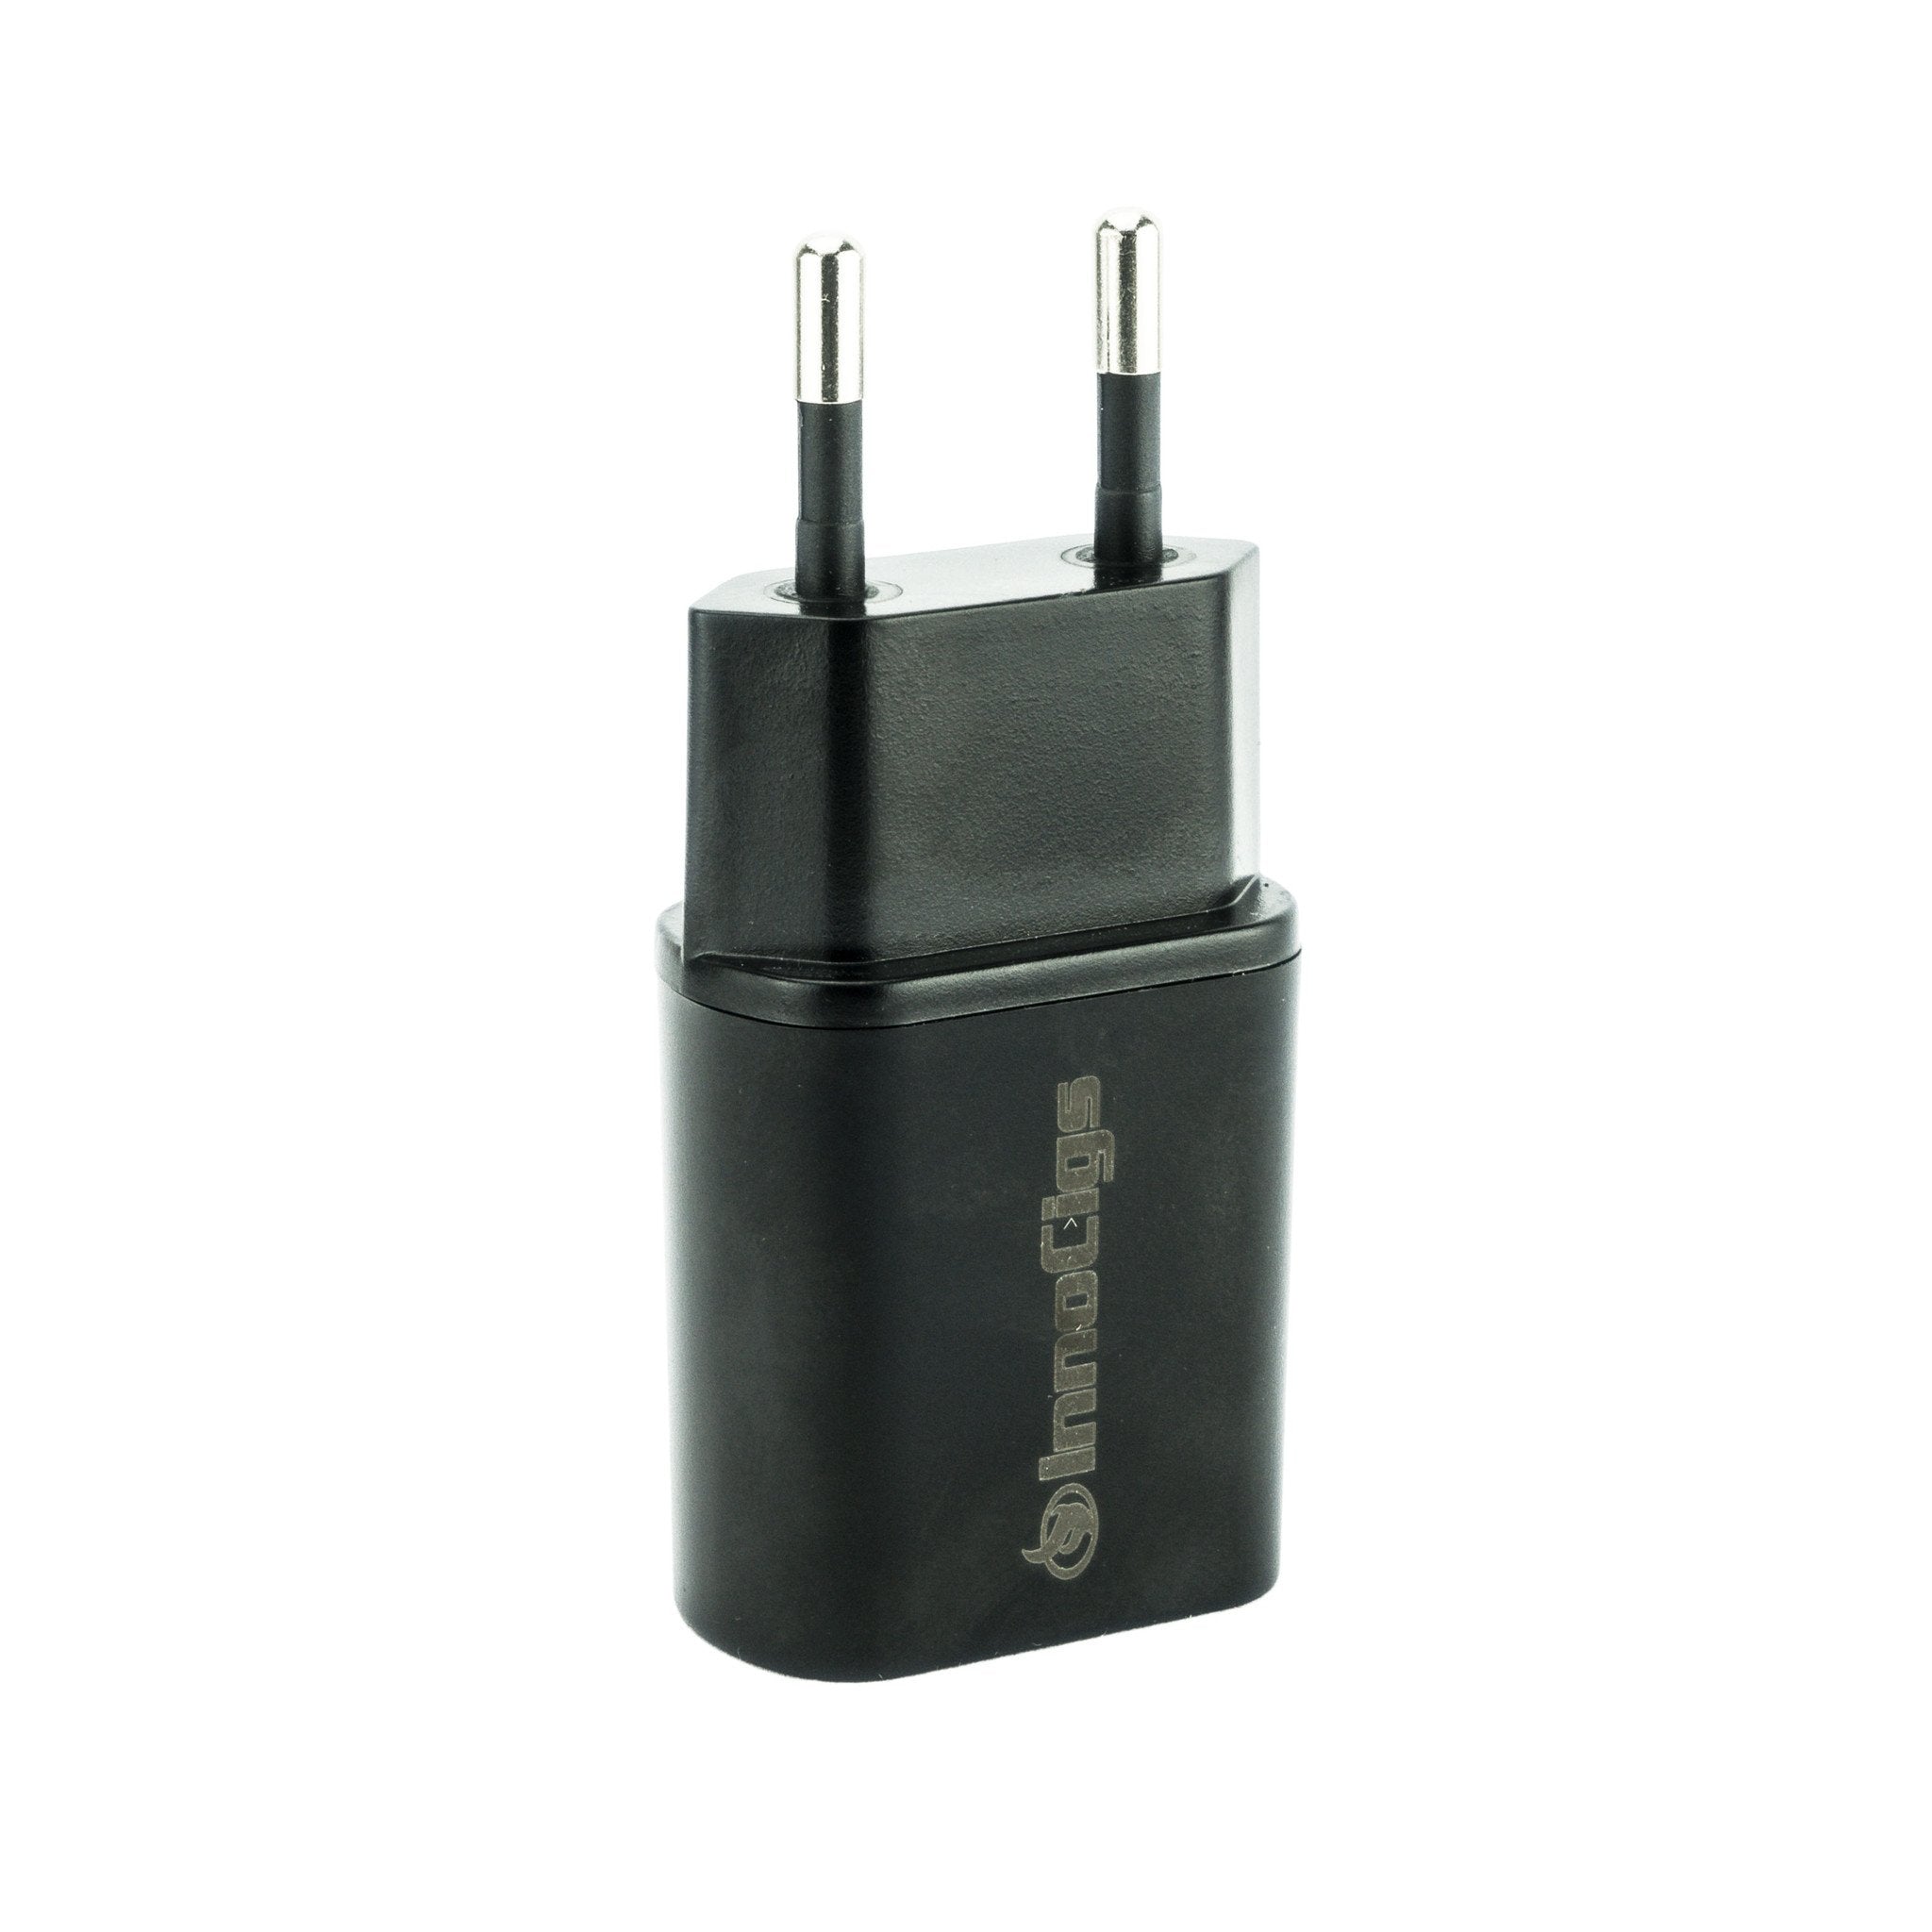 InnoCigs Netzstecker / Steckernetzteil / Netzadapter (USB 500 mA)